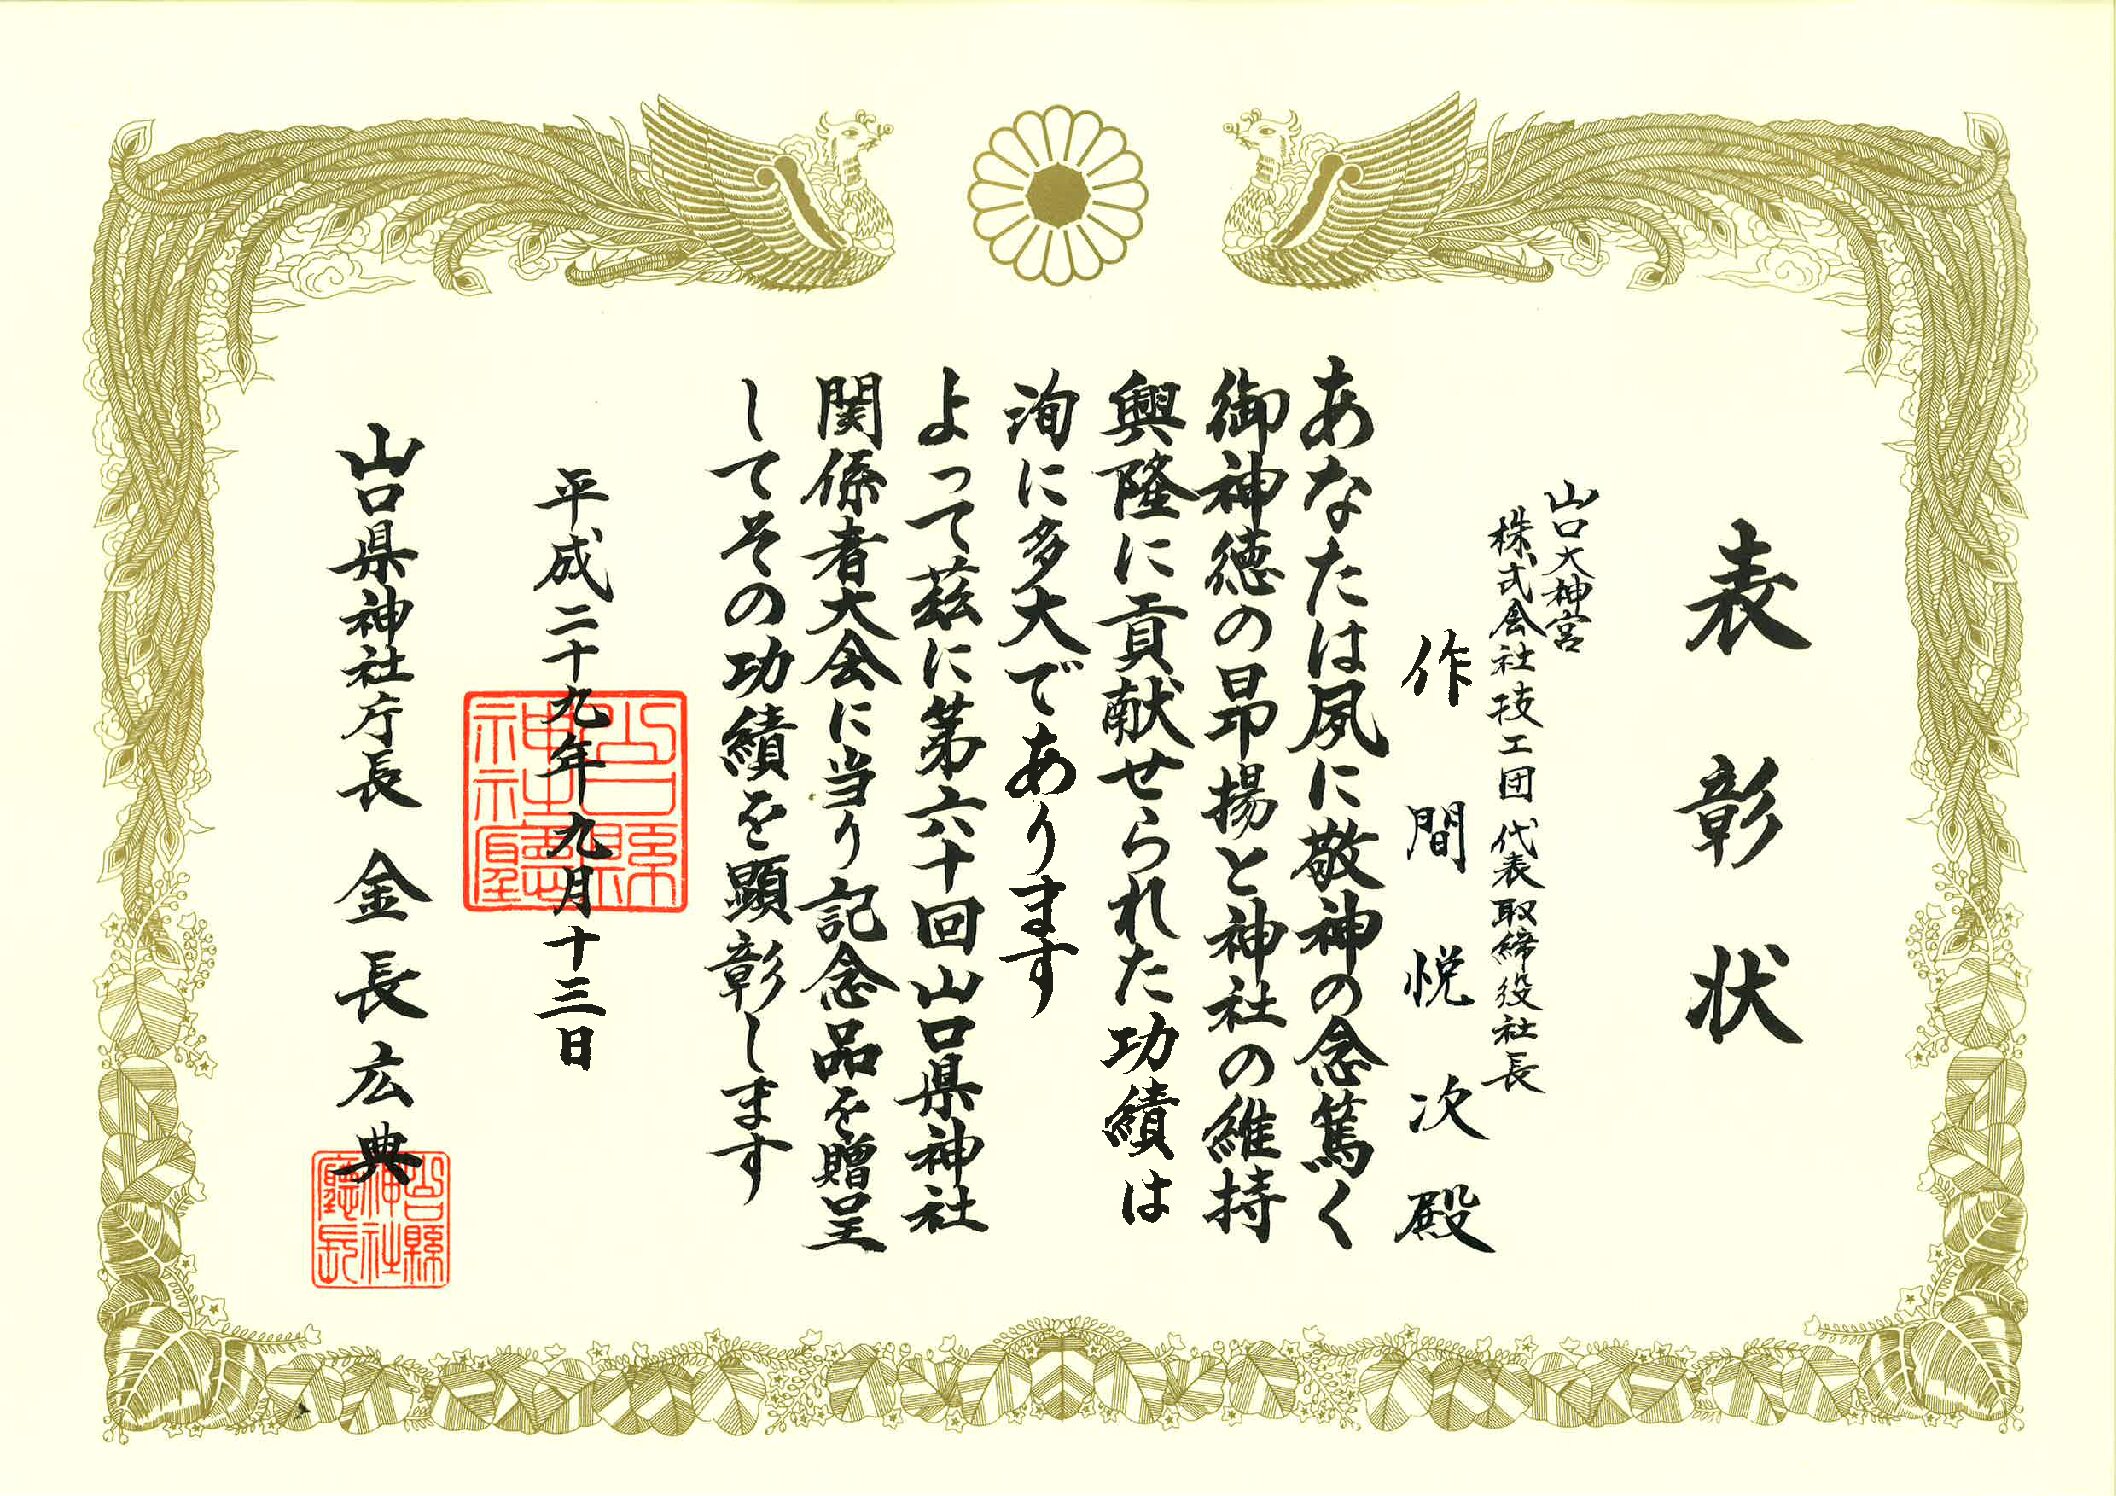 山口県神社庁より表彰状をいただきました。